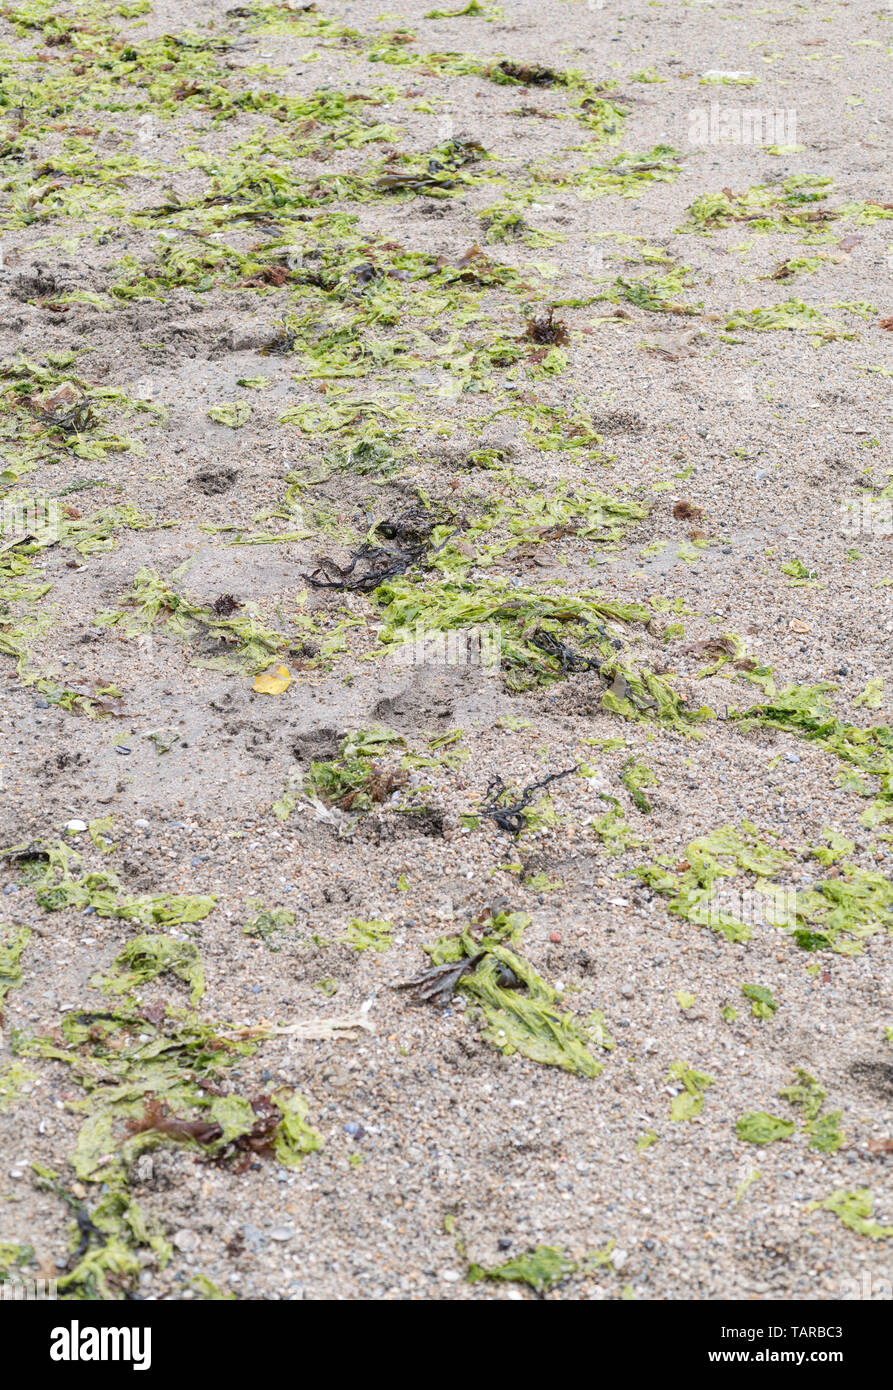 Las algas verdes lechuga de mar / Ulva lactuca arrastrado en una playa y depositado en la línea o tideline deriva. La lechuga de mar fresca es comestible. Foto de stock